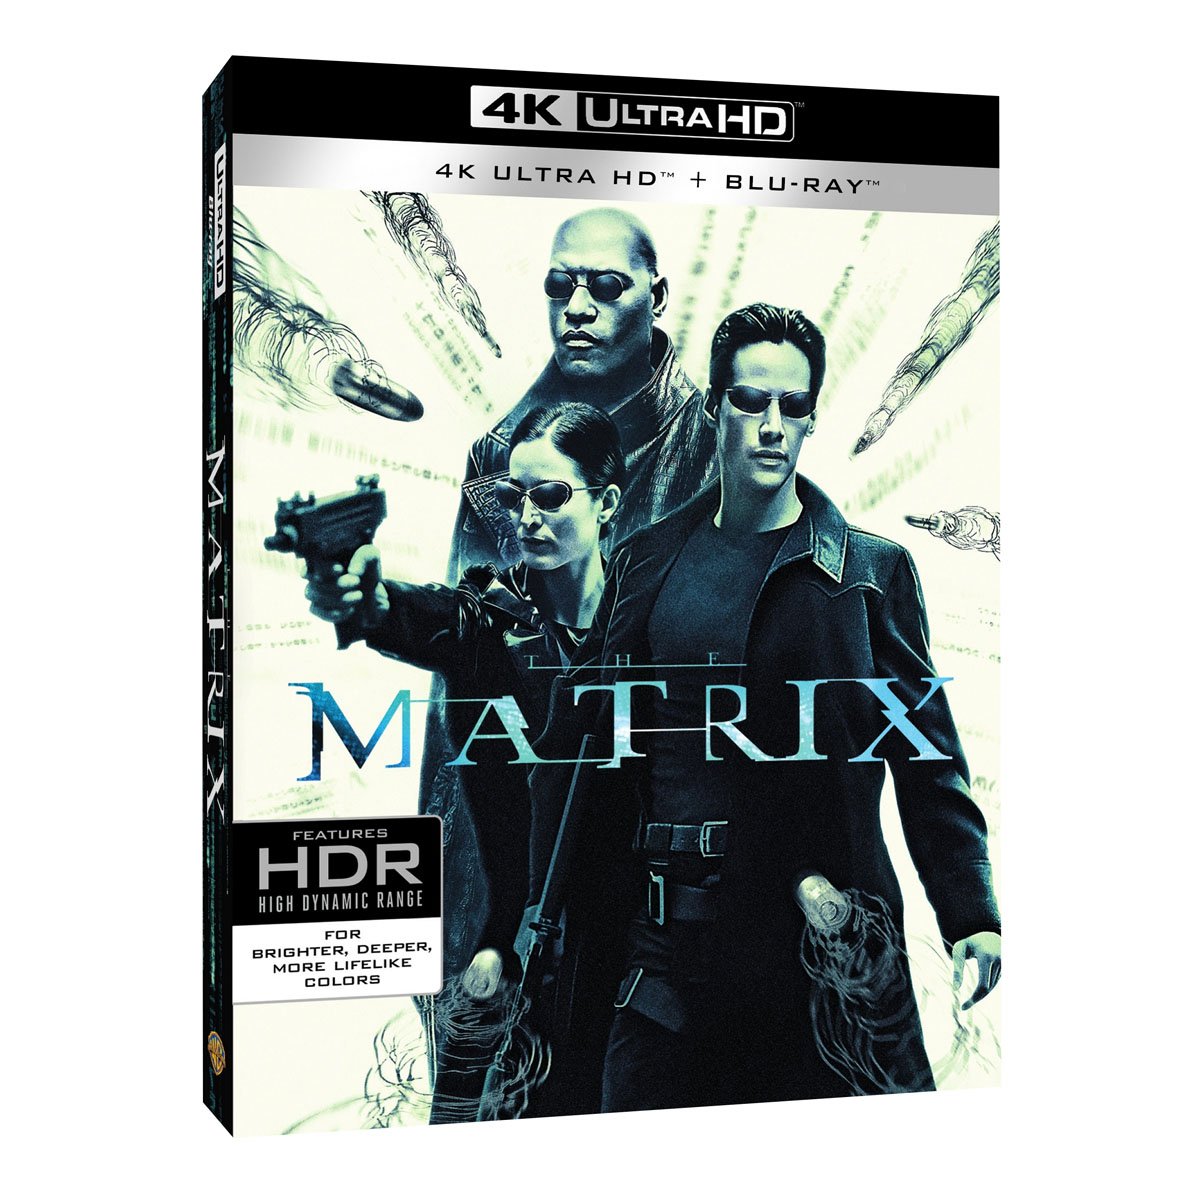 4K Ultra Hd + Blu Ray  Matrix